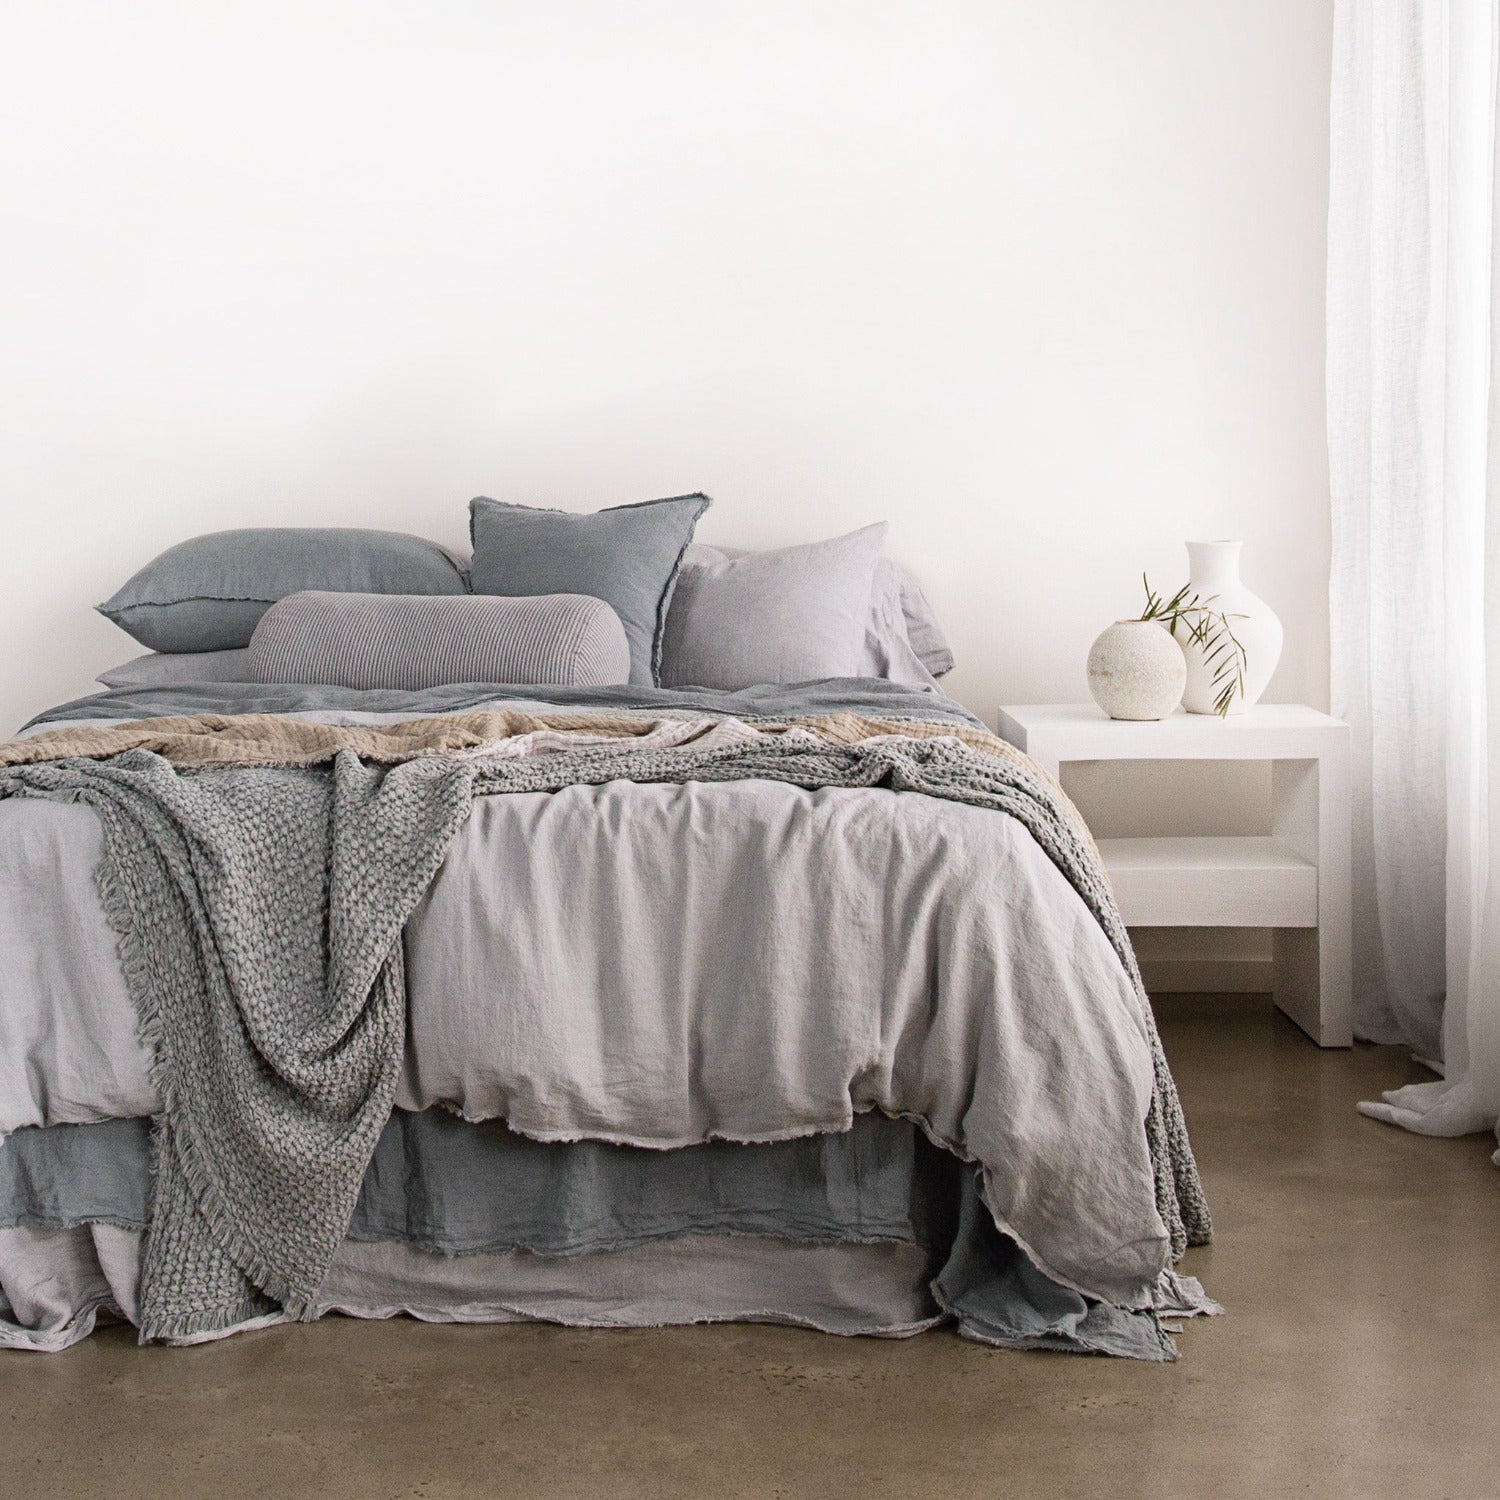 Linen Cushion & Cover | Cornflower Blue | Hale Mercantile Co.